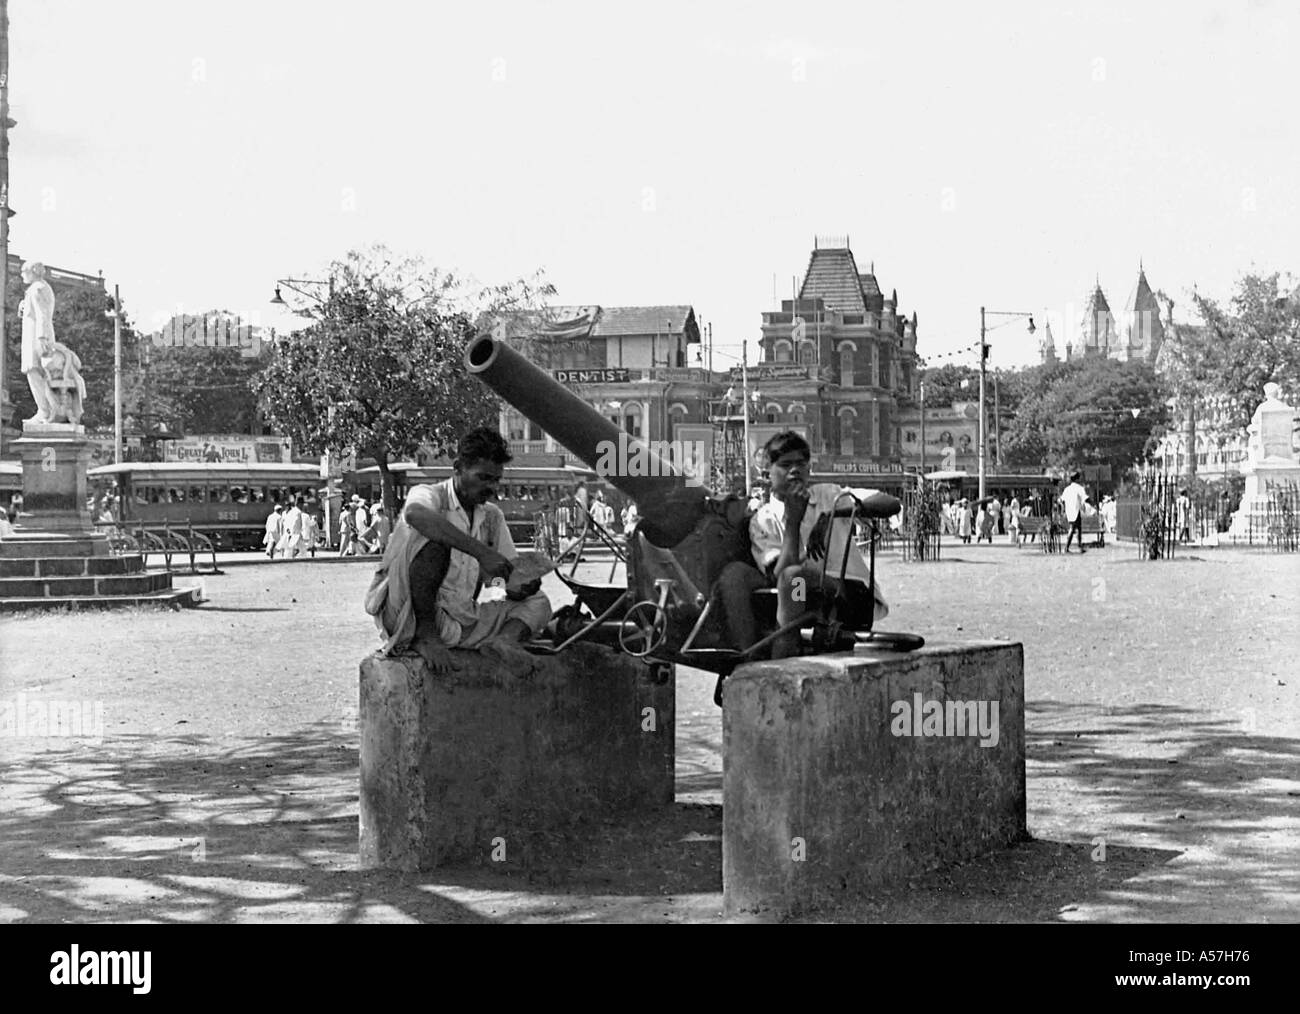 PCP052A Old Gun Fort VT Bombay Mumbai Maharashtra India 1946 Stock Photo